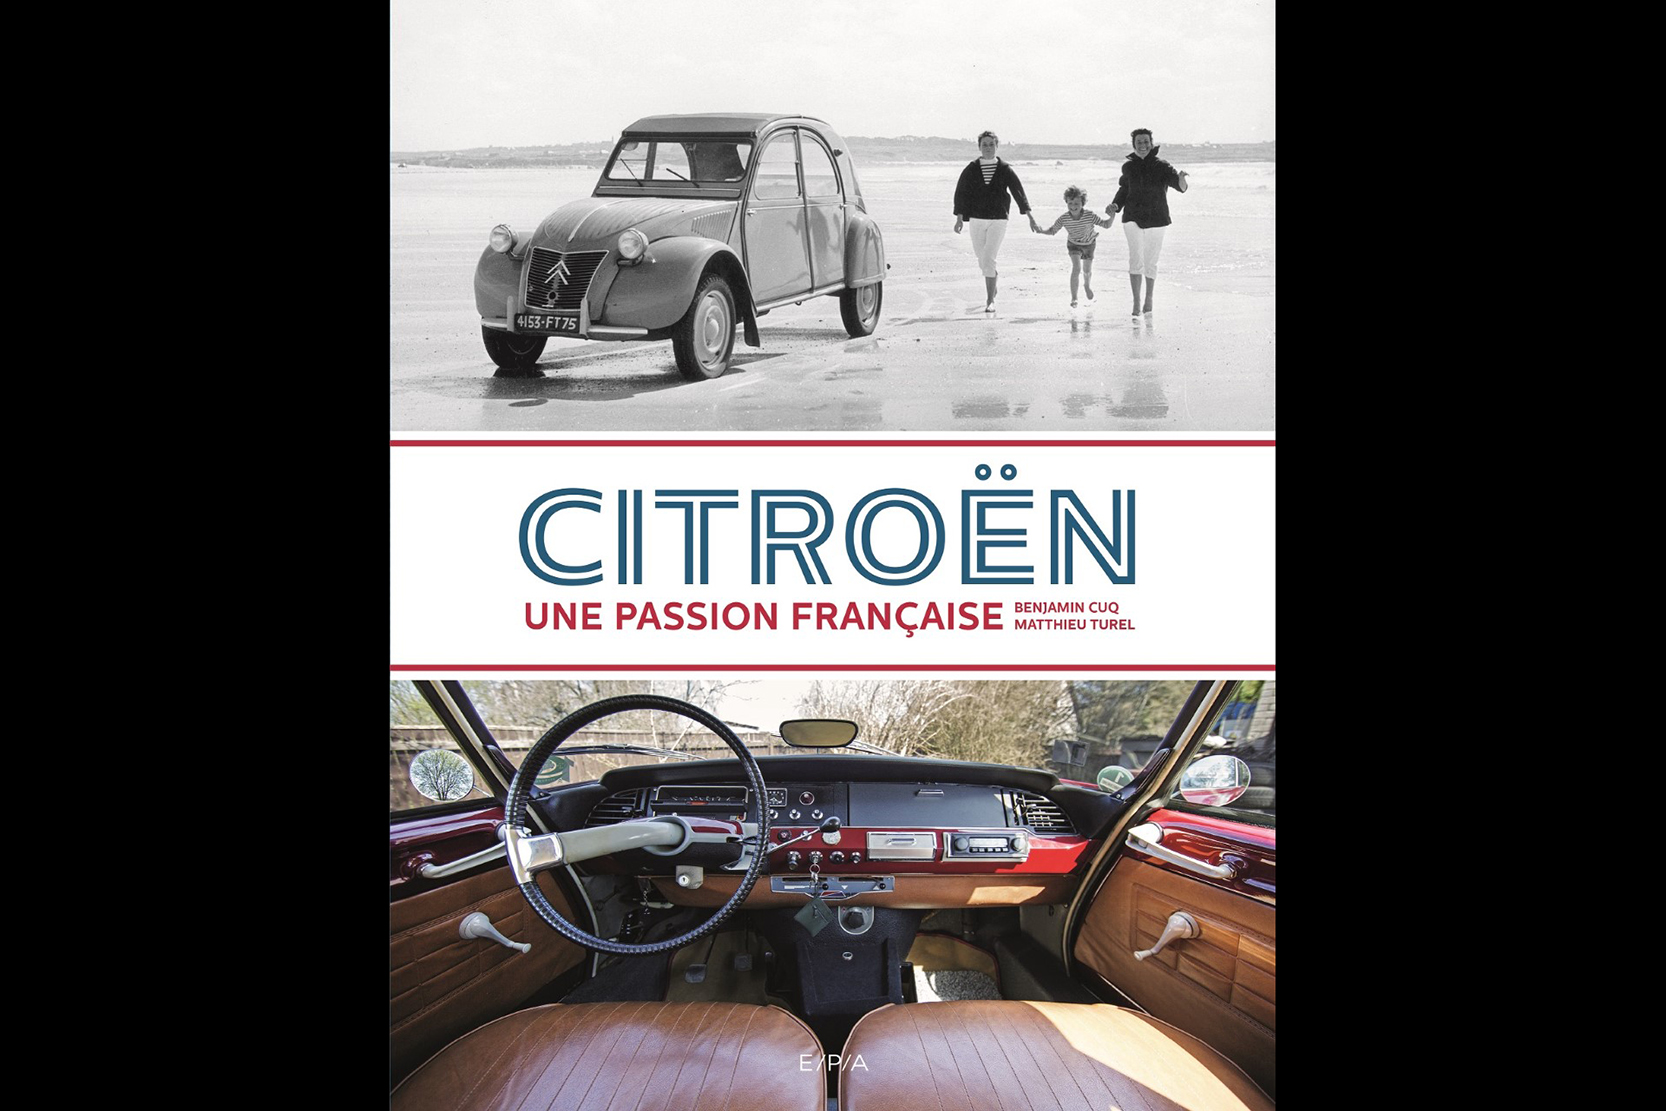 Livre Citroën : une passion francaise